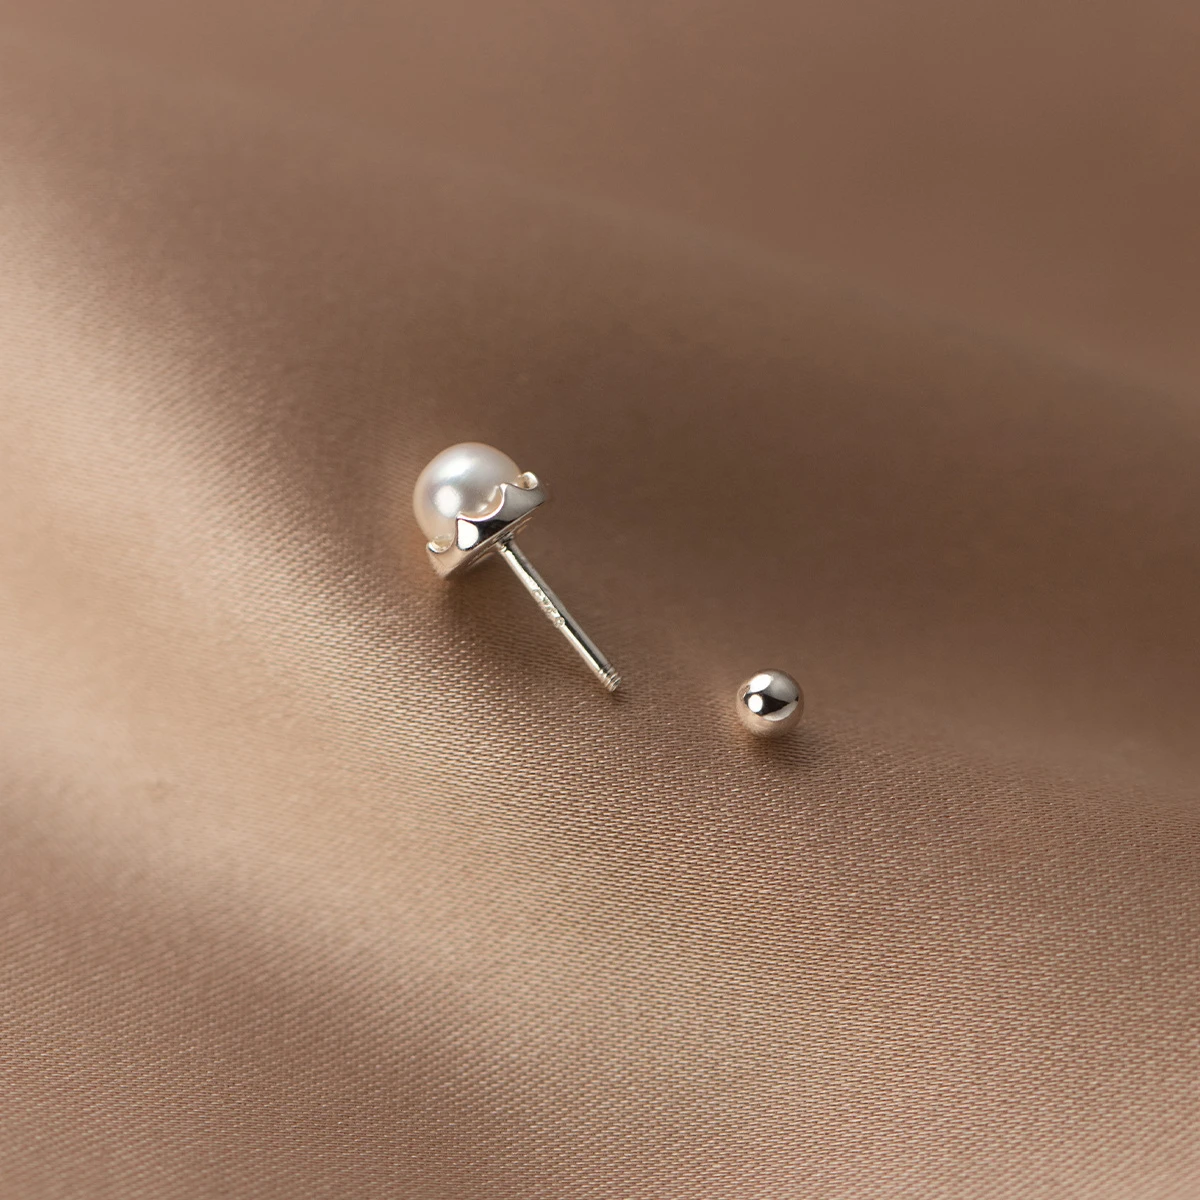 Настоящее серебро 925 пробы, серьги с пресноводным жемчугом, серьги-гвоздики для ушей, женские подарки Изображение 3